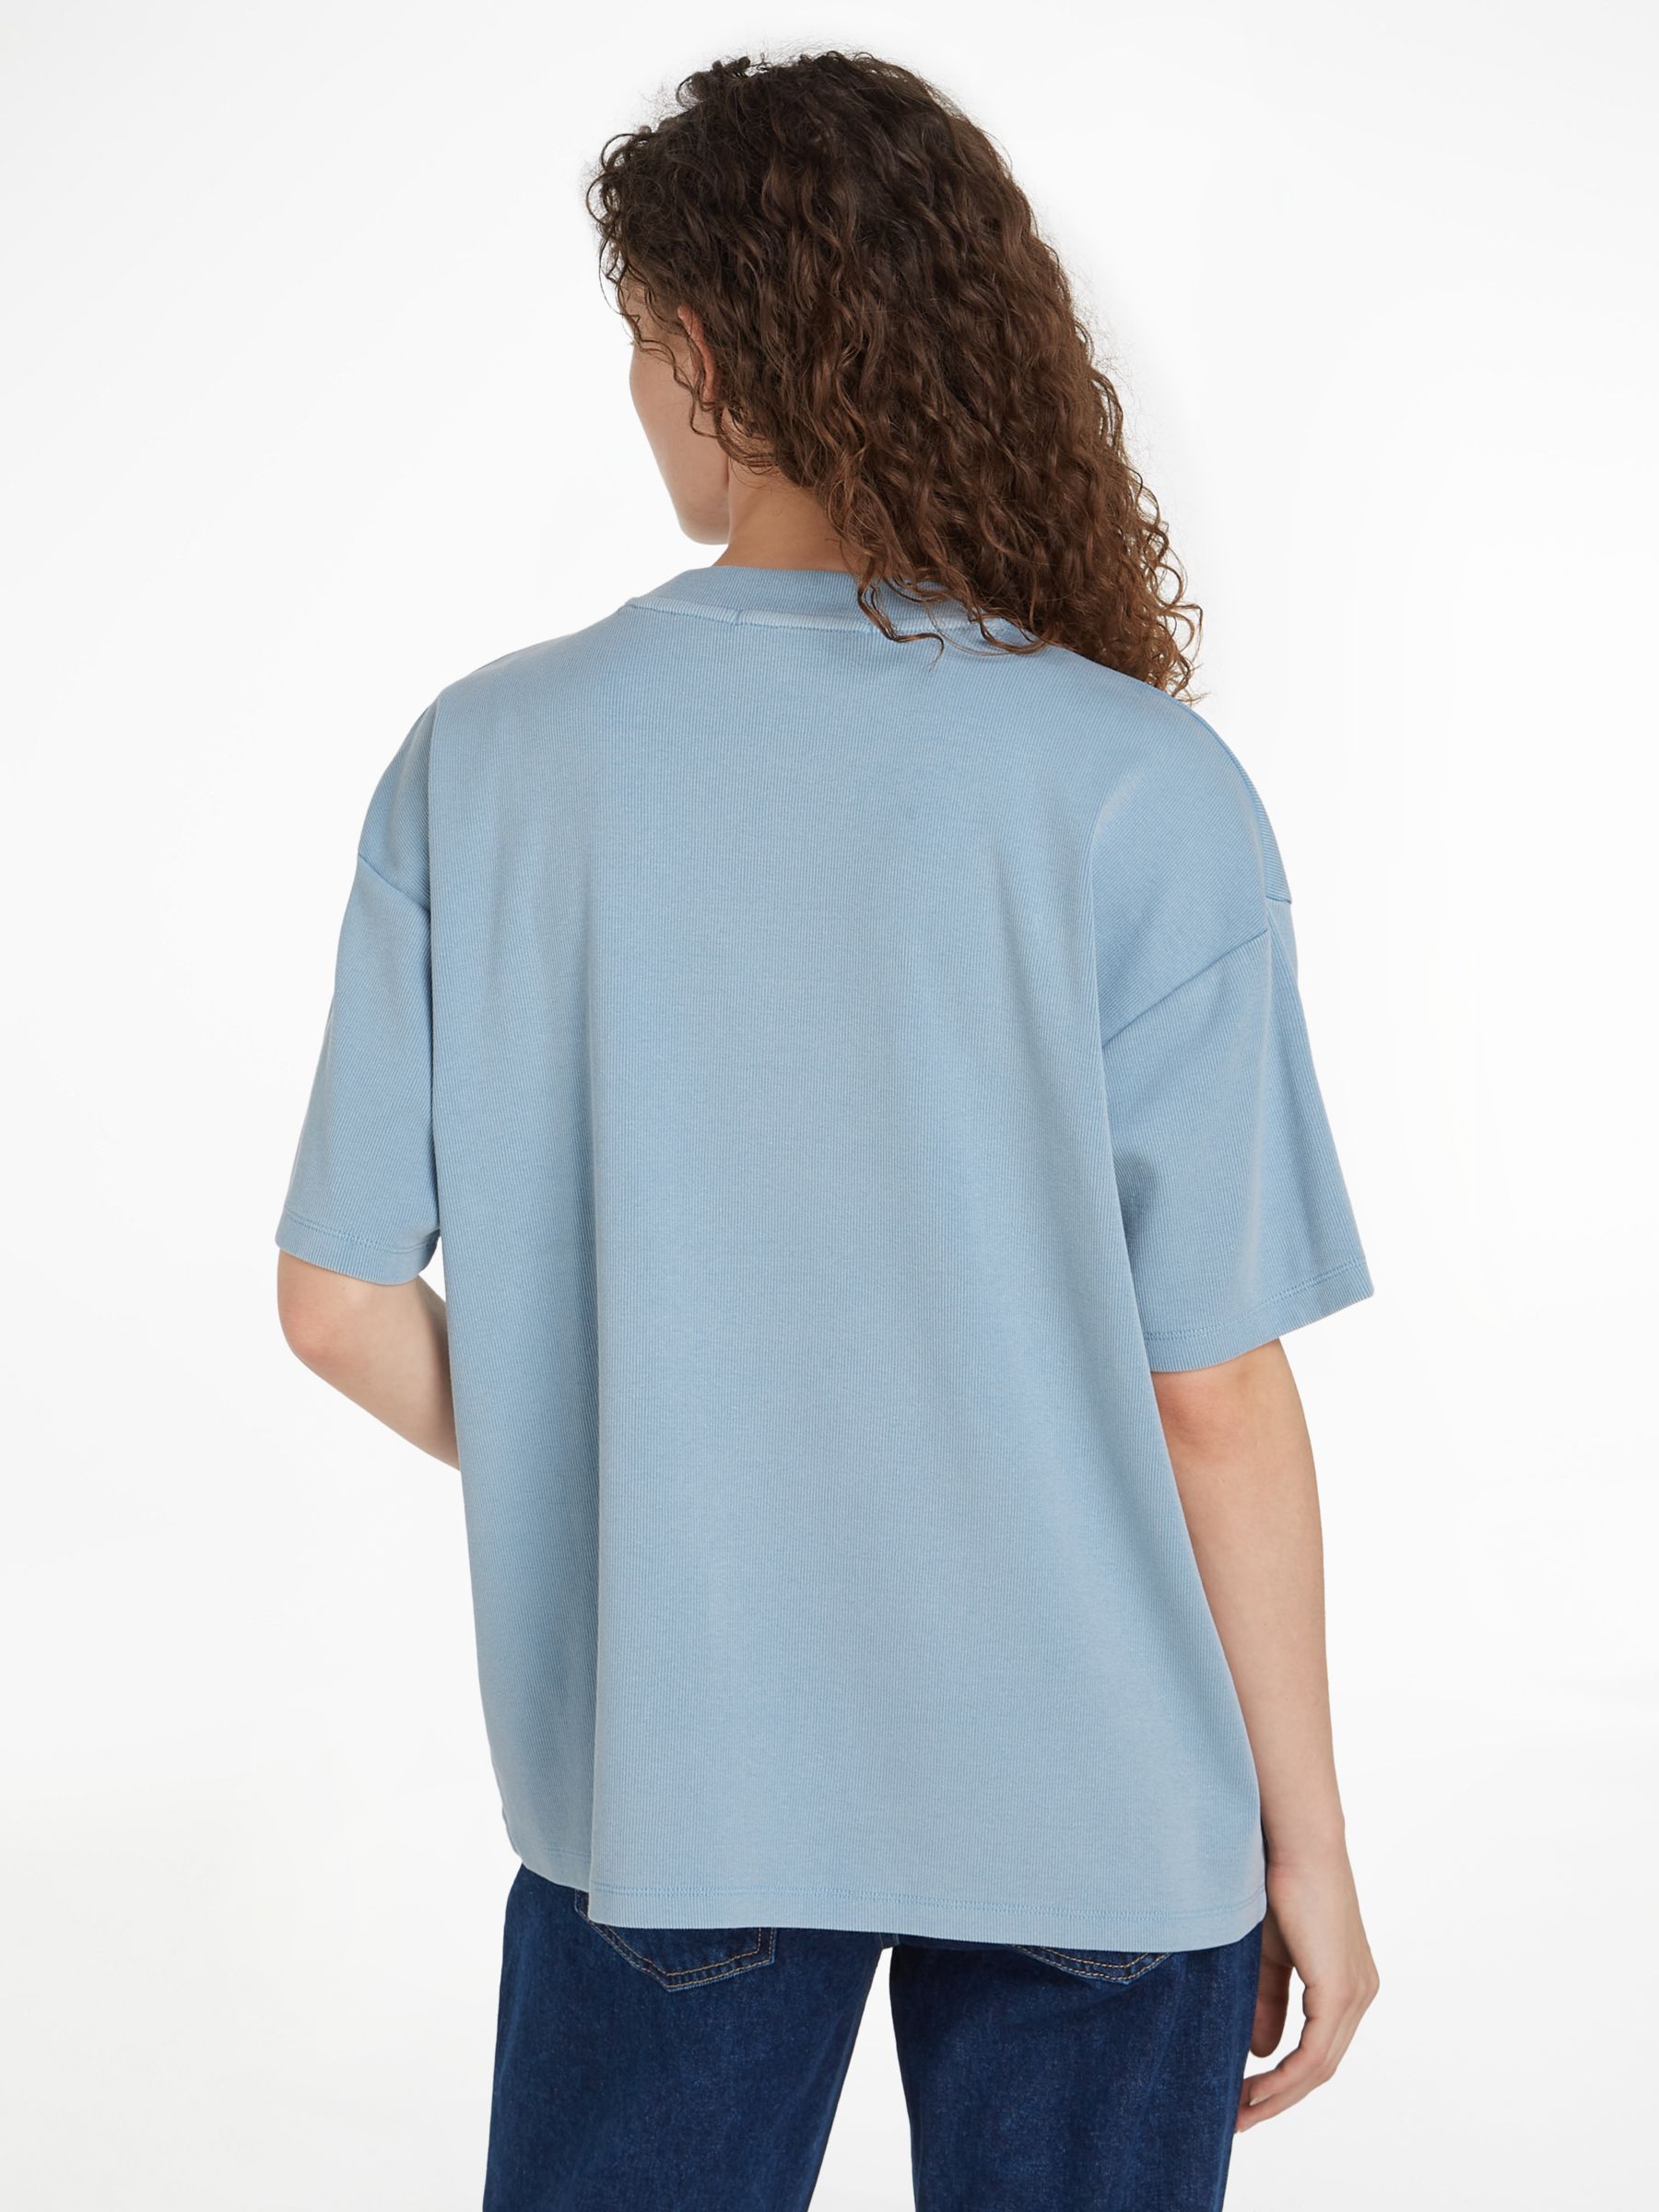 Buy Calvin Klein Boyfriend T-Shirt Online at johnlewis.com